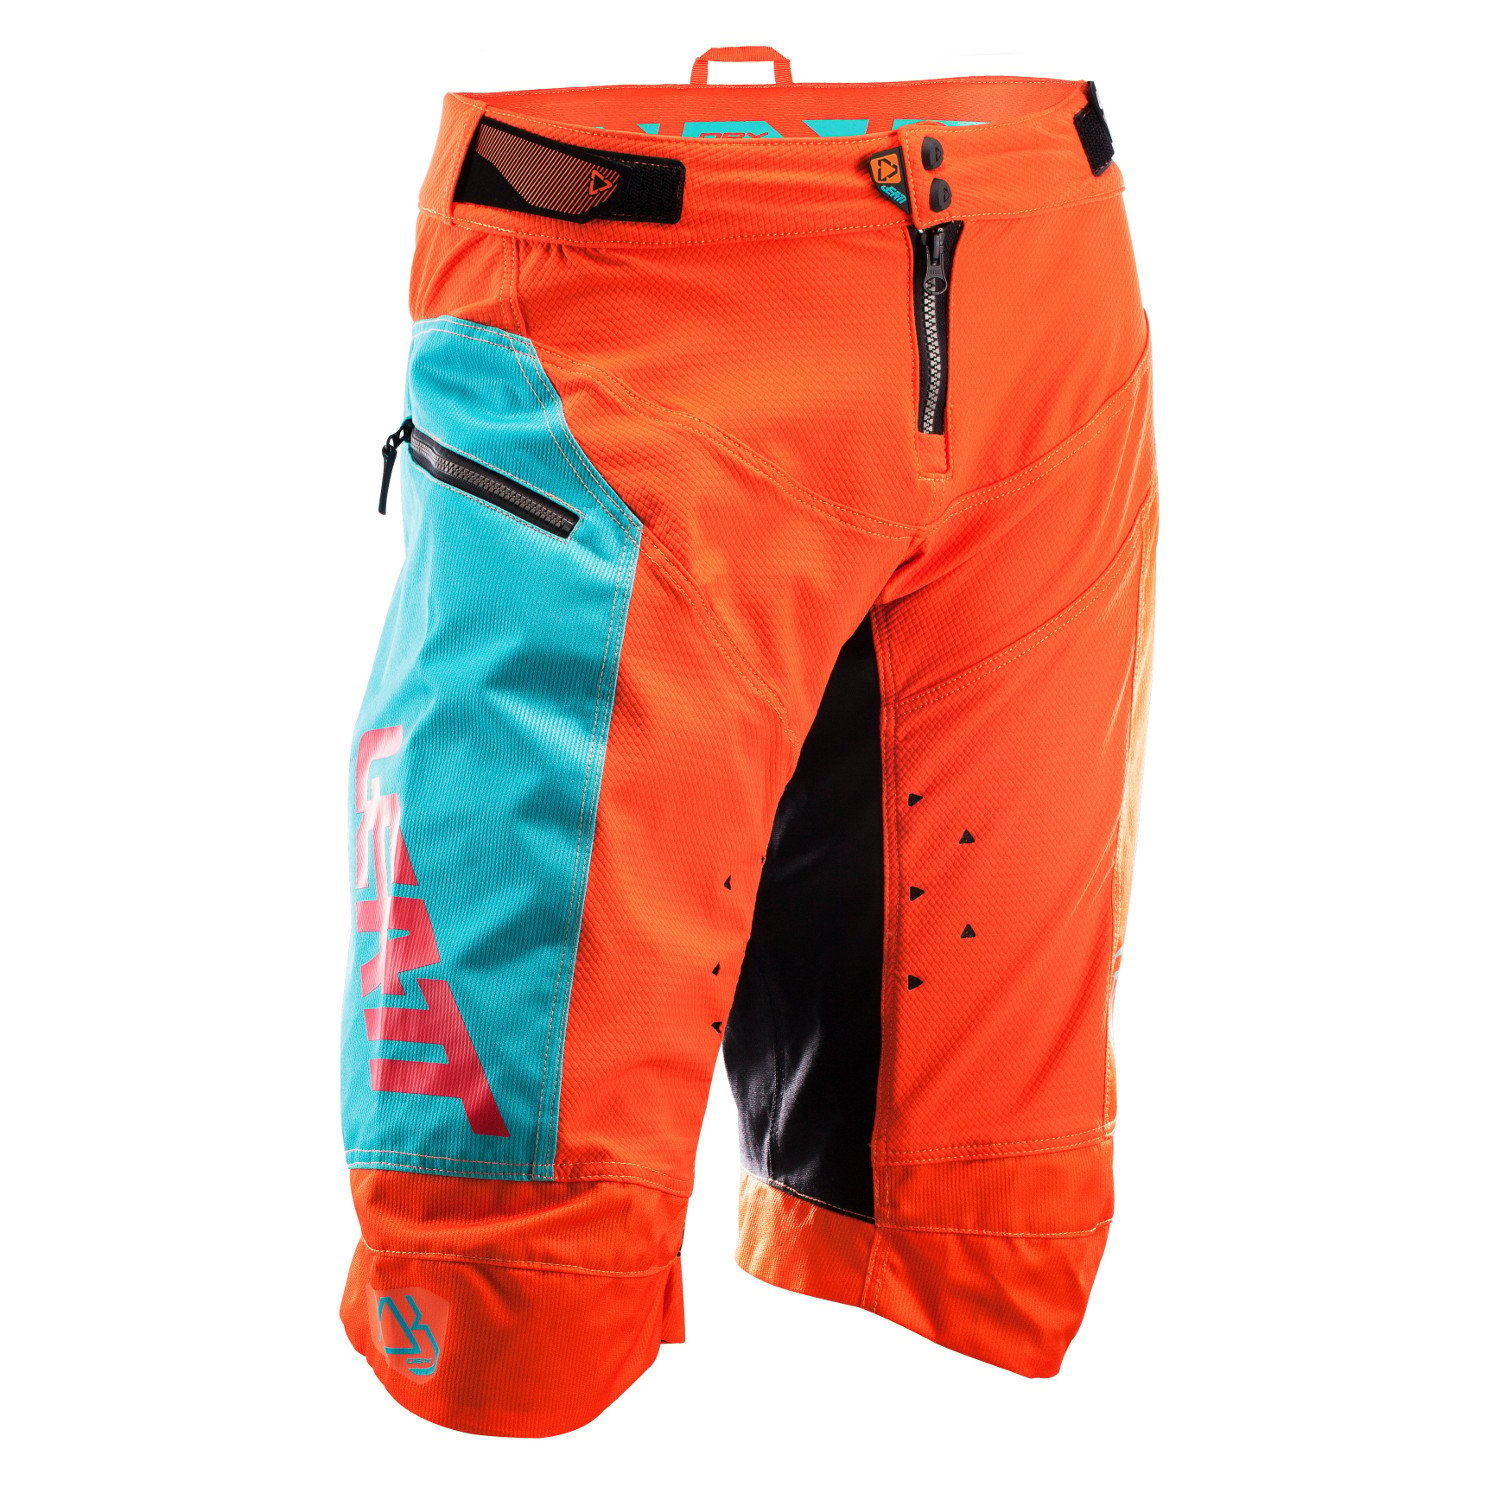 Leatt Downhill Shorts DBX 4.0 Orange/Teal